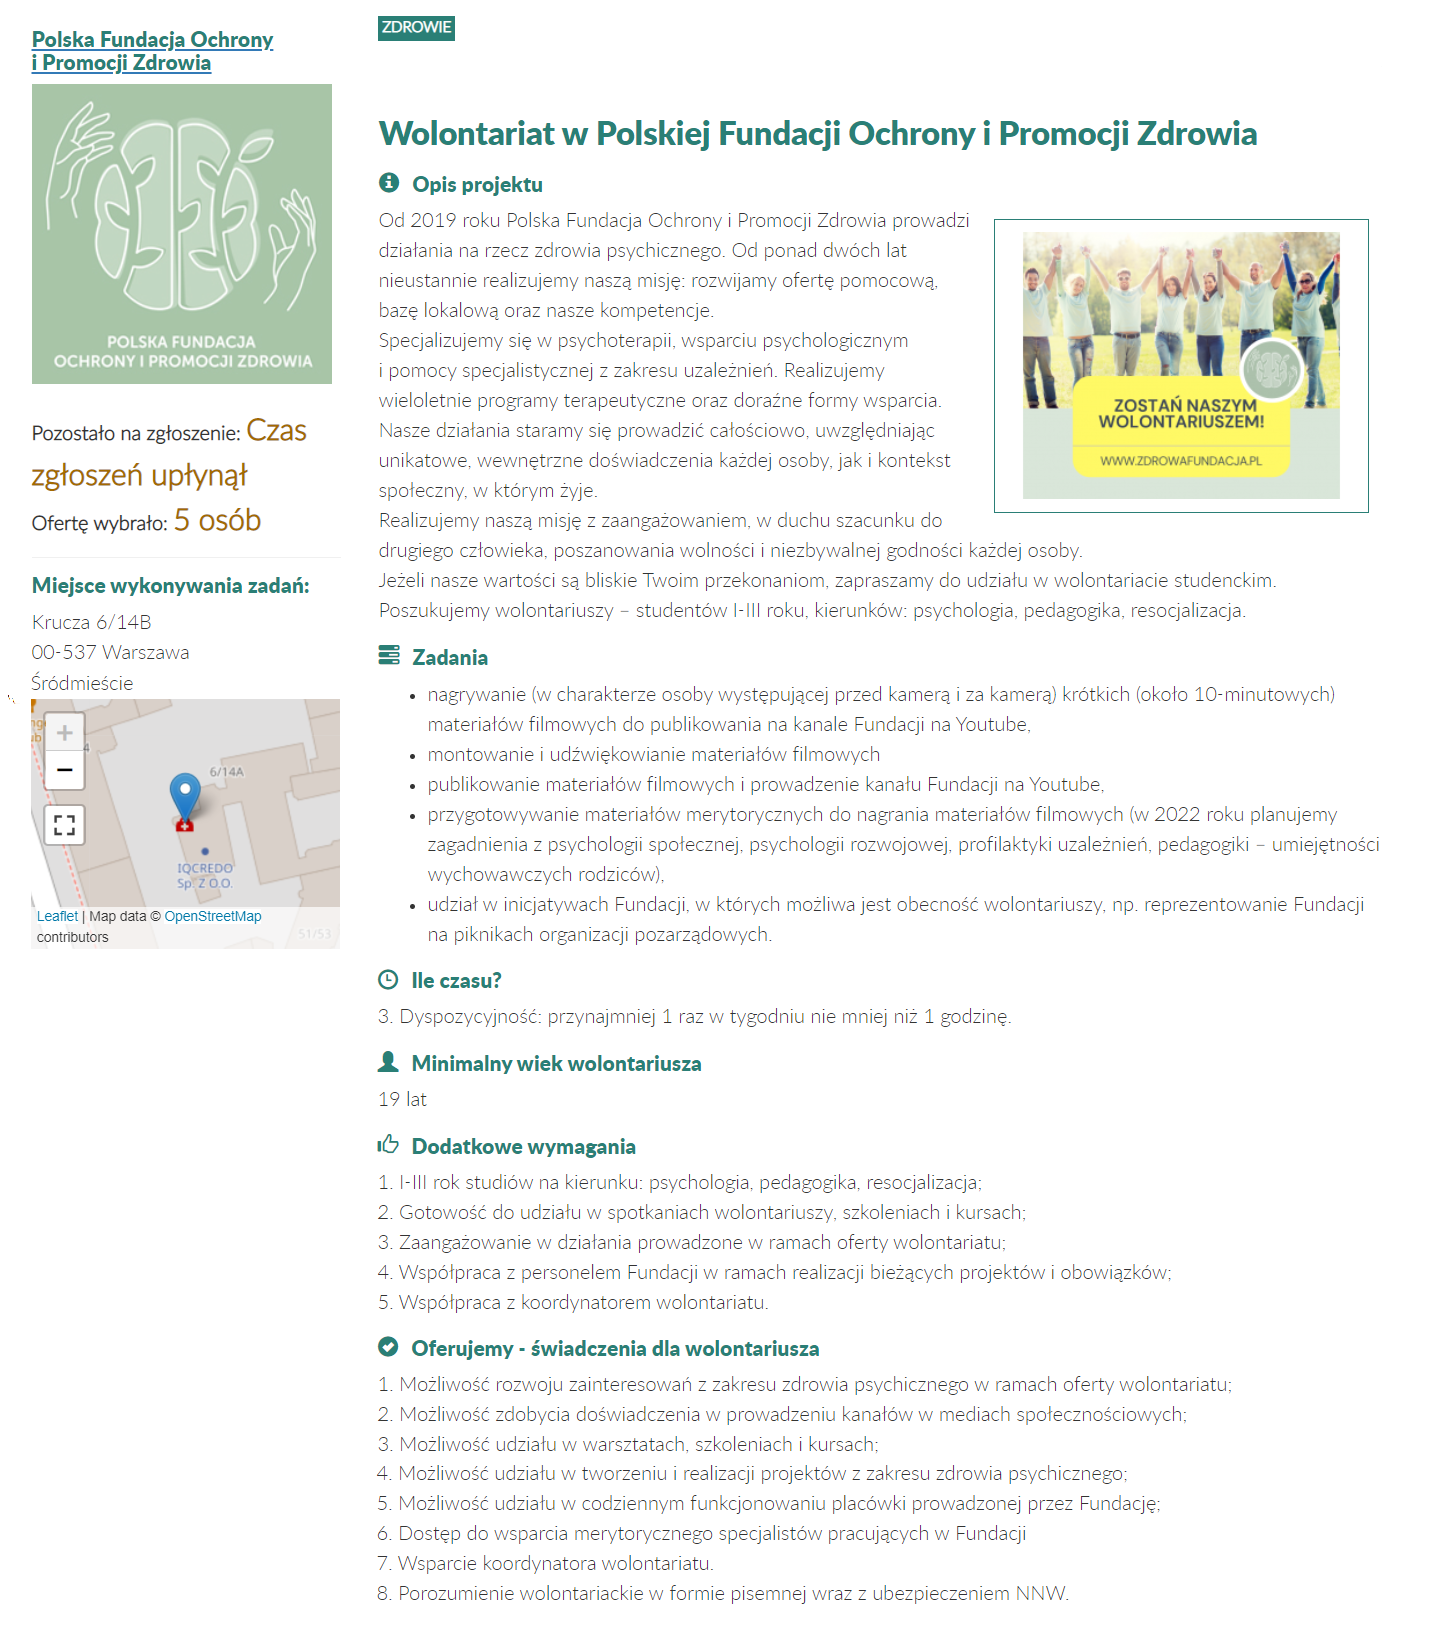 zrzut ekranu z ofertą "Wolontariat w Polskiej Fundacji Ochrony i Promocji Zdrowia